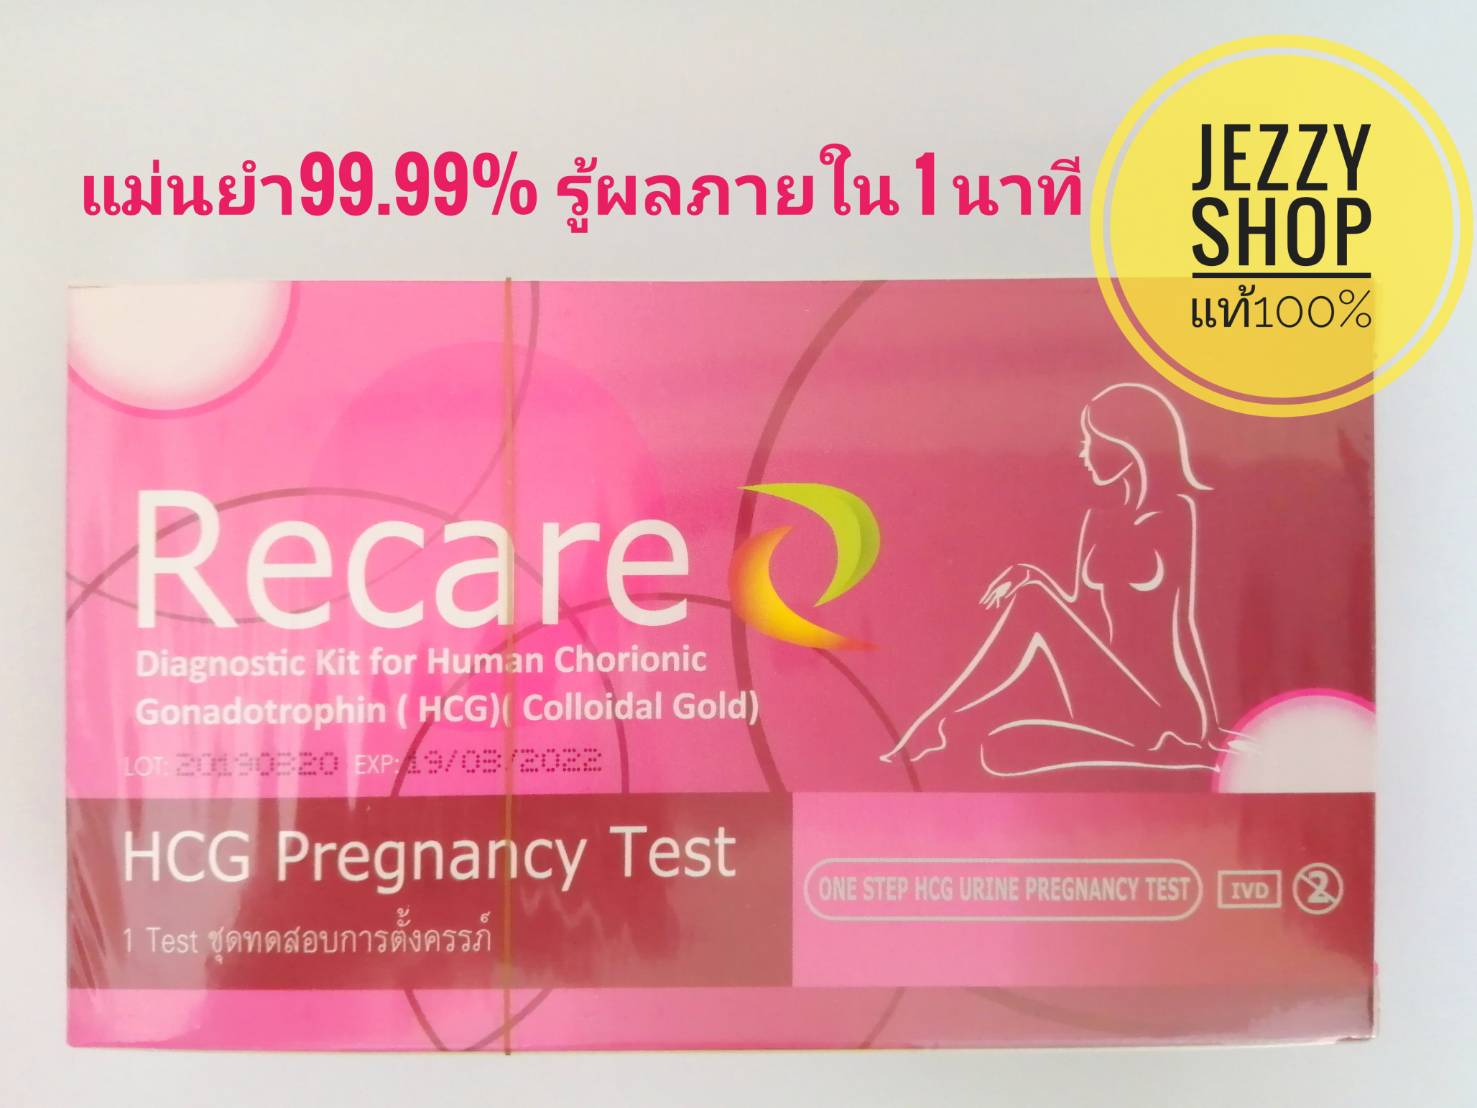 ชุดทดสอบการตั้งครรภ์ ตั้งครรภ์ ตรวจท้อง แบบจุ่ม Recare HCG Pregnancy Test 99.99�curacy รู้ผลภายใน 1 นาที (1 ชุด)